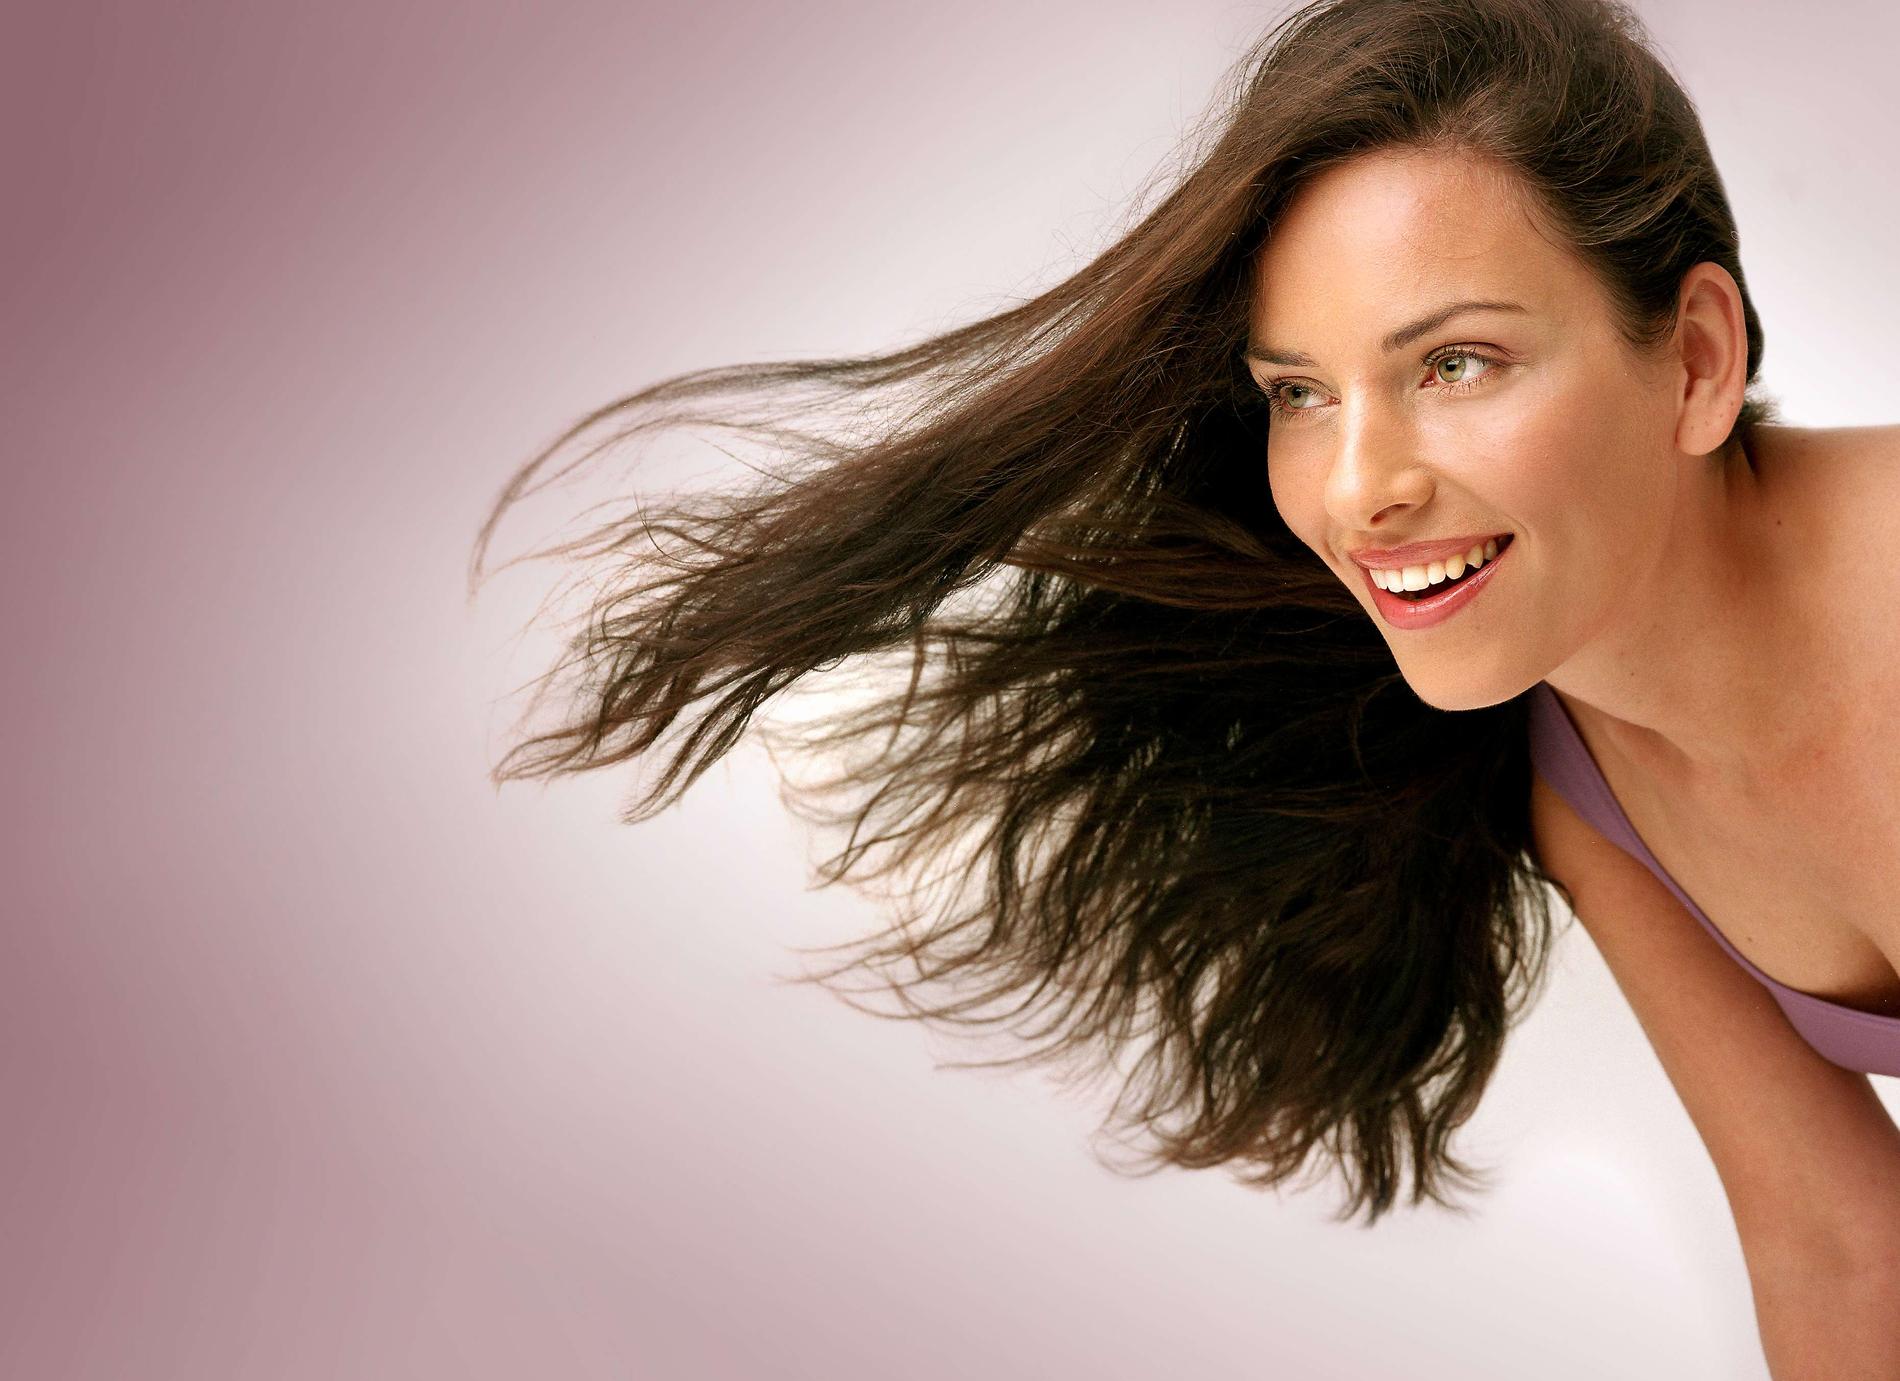 Att få underbart hår behöver inte vara svårt. Hälsa ger dig de bästa tipsen för ett vackert hår.